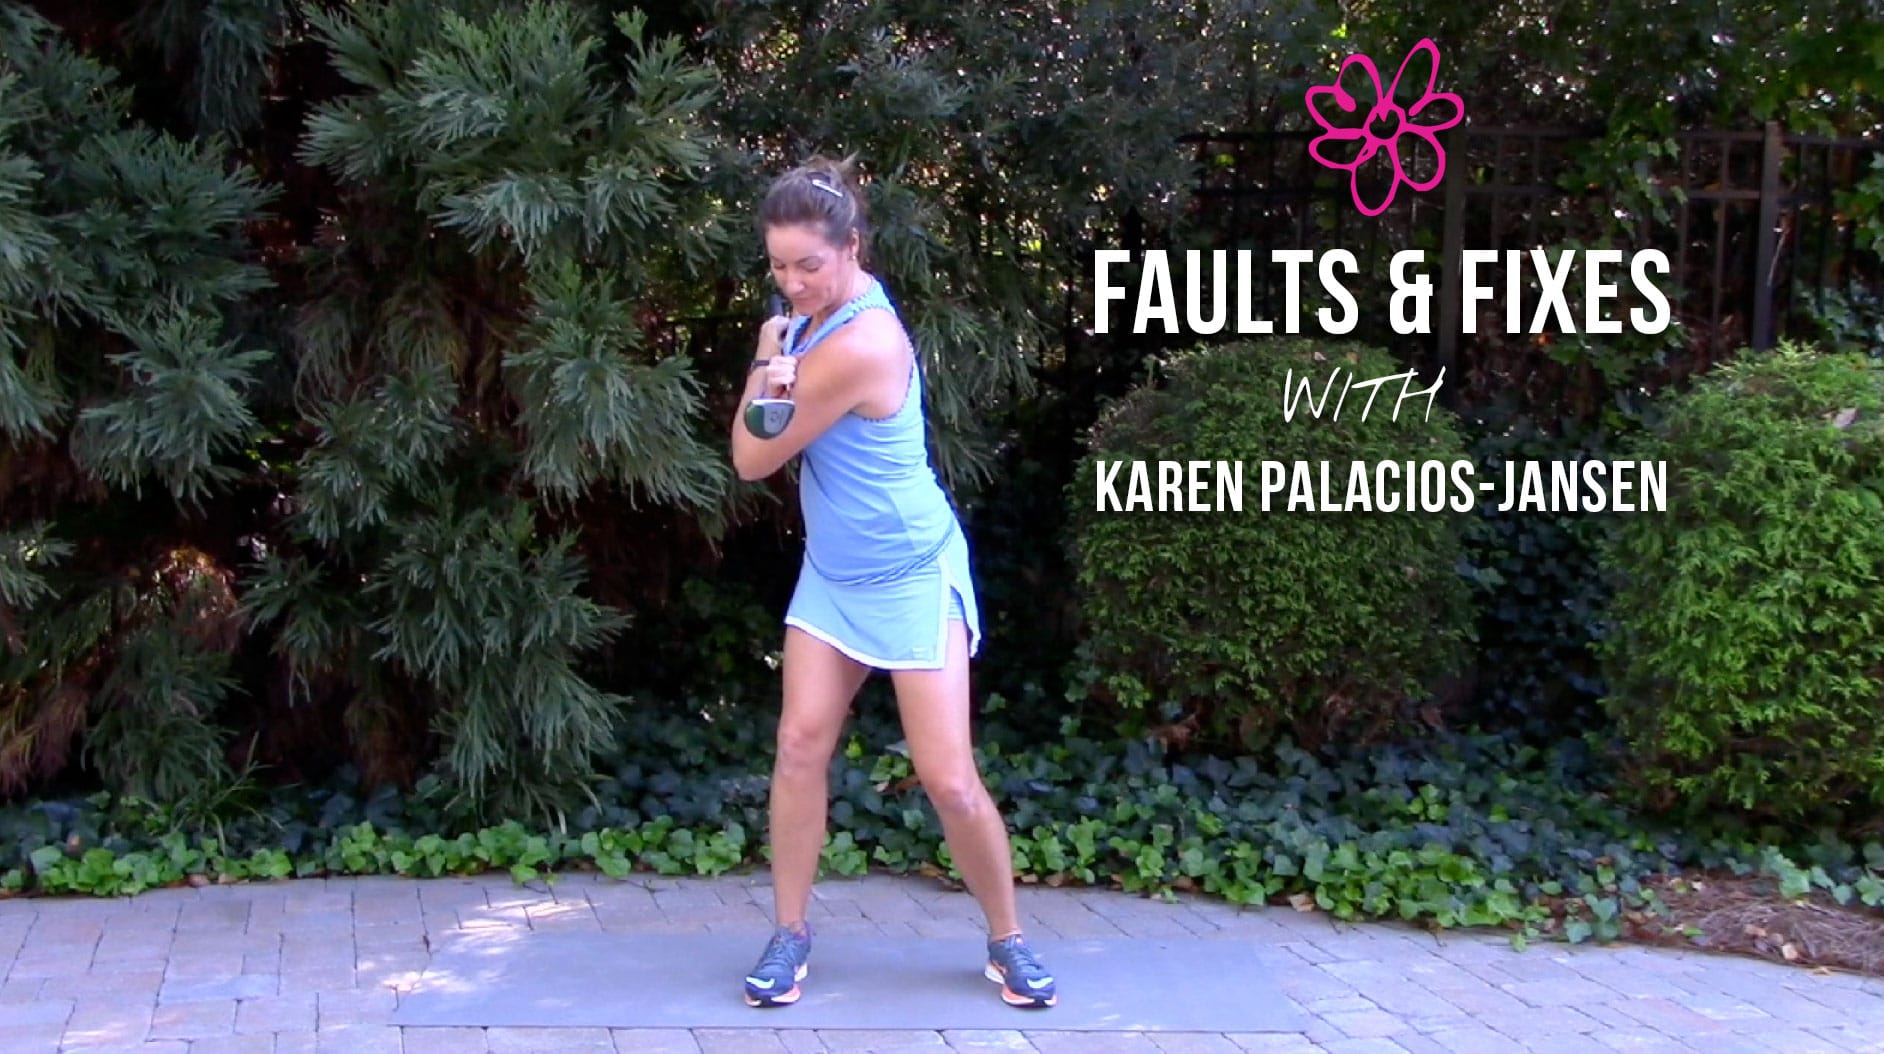 10 Faults & Fixes by Karen Palacios-Jansen